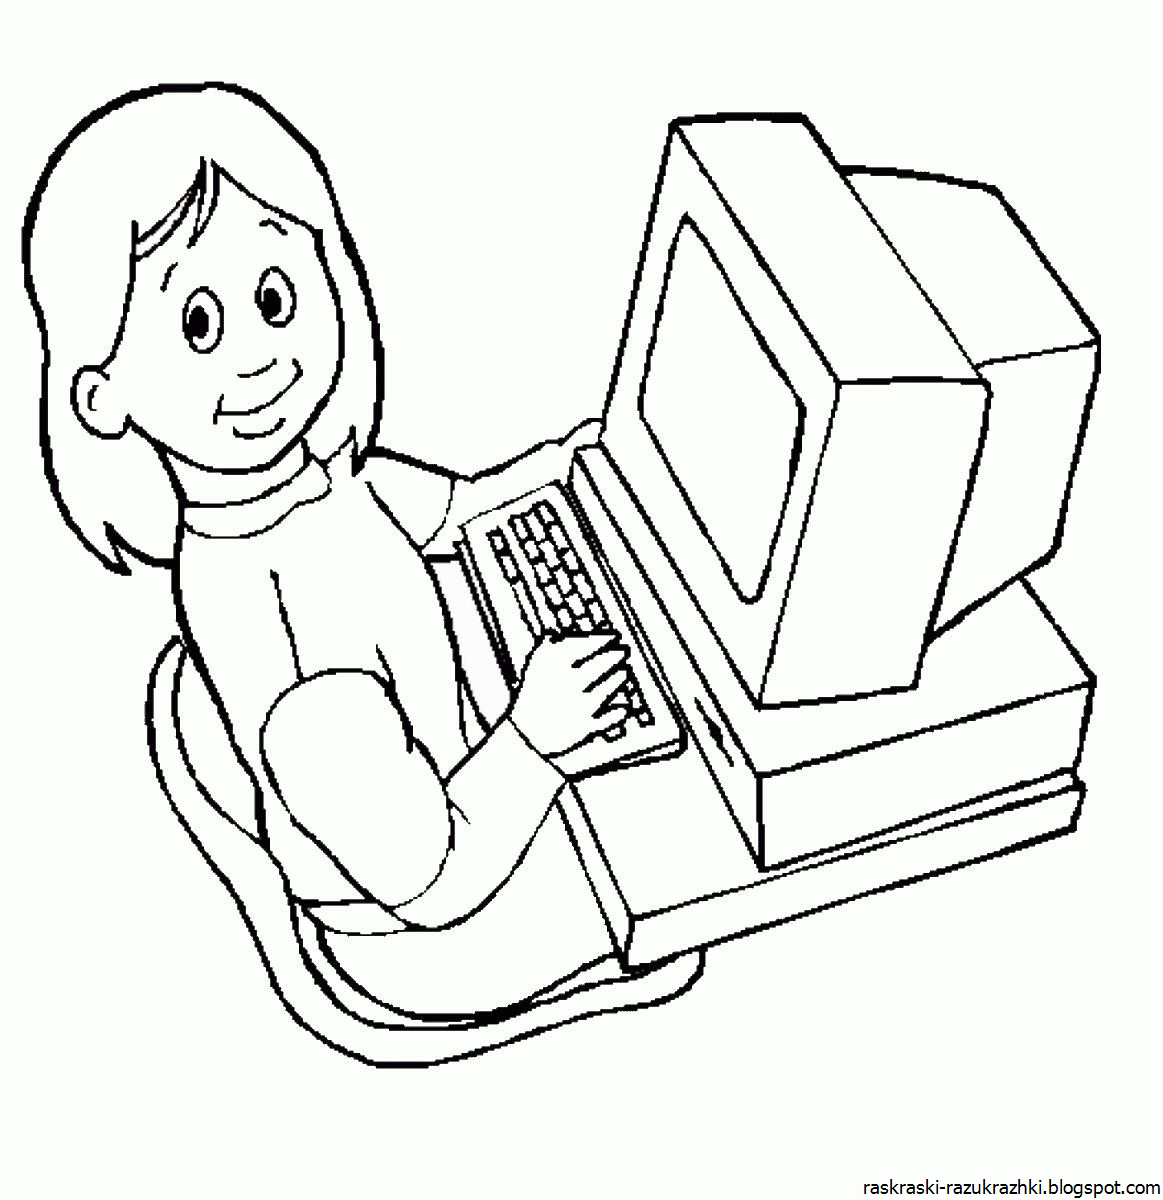 Компьютер раскраска для детей. Компьютер для раскрашивания для детей. Рисование на компьютере для детей. Раскраска для детей накомпюторе. Компьютер раскраска распечатать